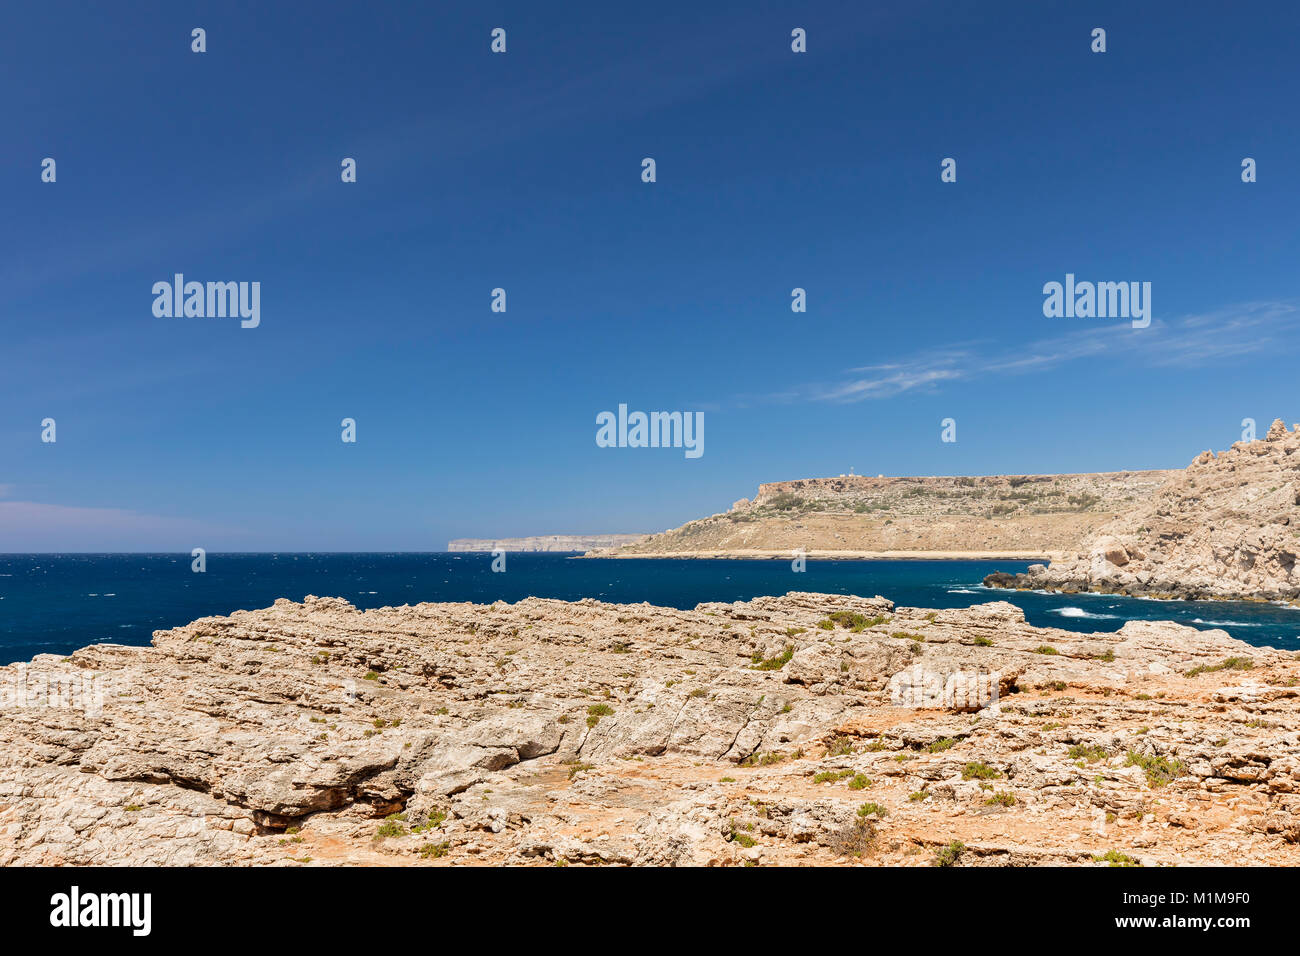 Una imagen desde la árida costa noroeste de Malta shot en Anchor Bay. Foto de stock